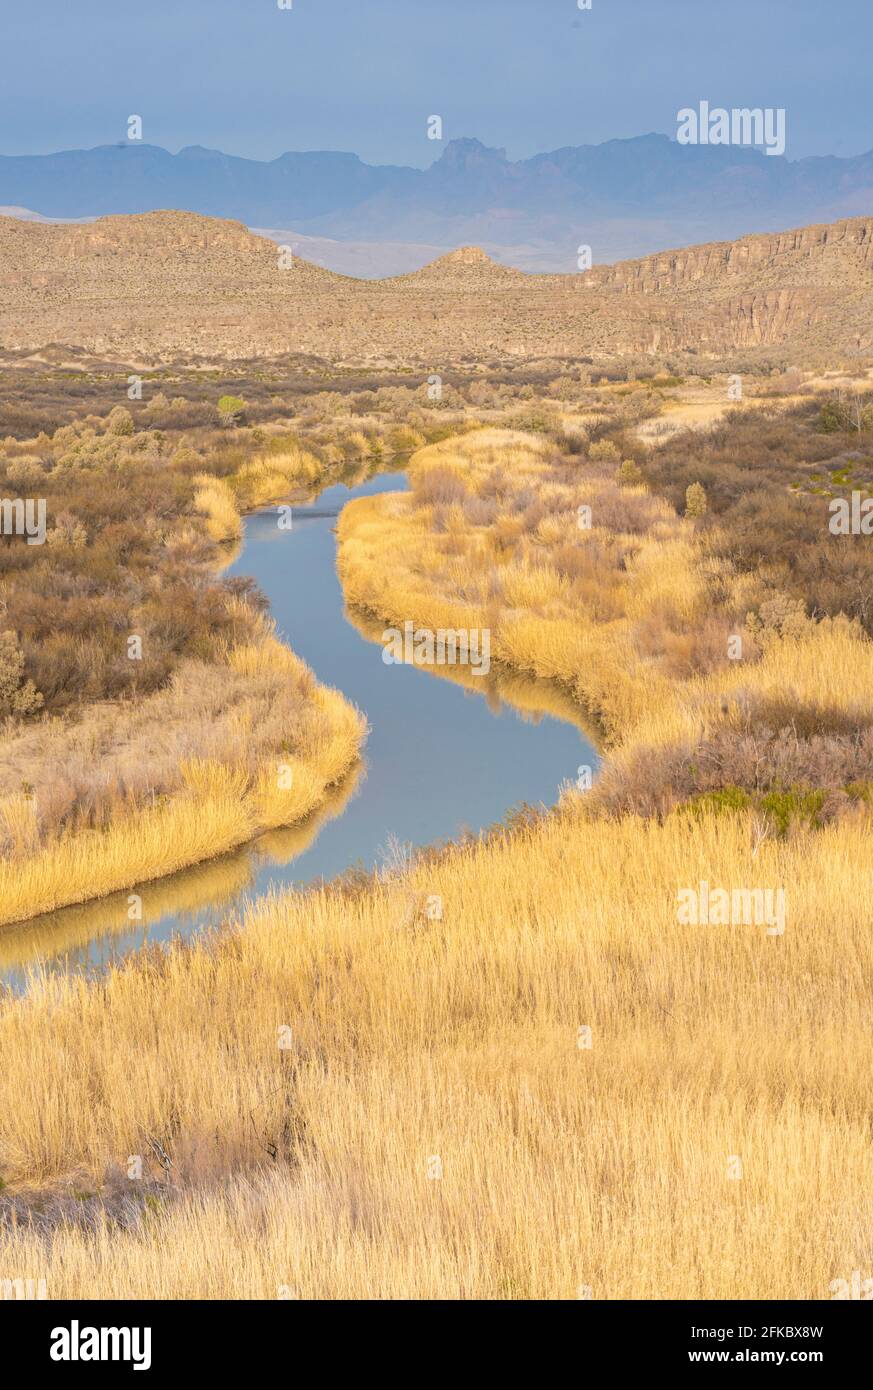 Rivière Rio Grande en herbes dorées avec montagnes Chisos en arrière-plan, parc national de Big Bend, Texas, États-Unis d'Amérique, Amérique du Nord Banque D'Images